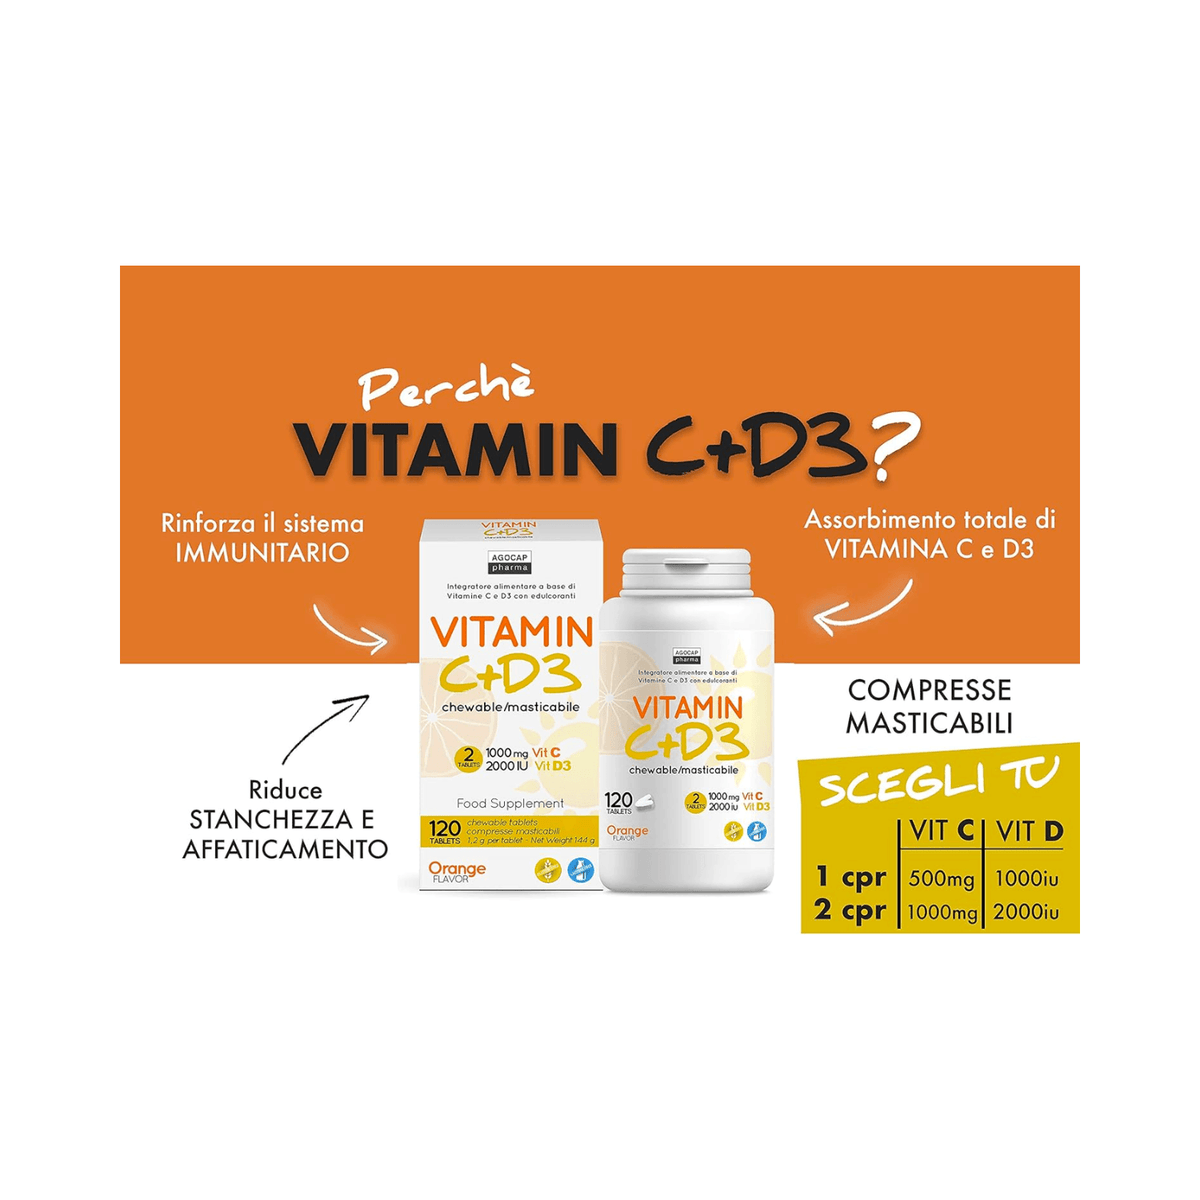 Vitamina c e d3 | Integratore c+d3 in compresse masticabili